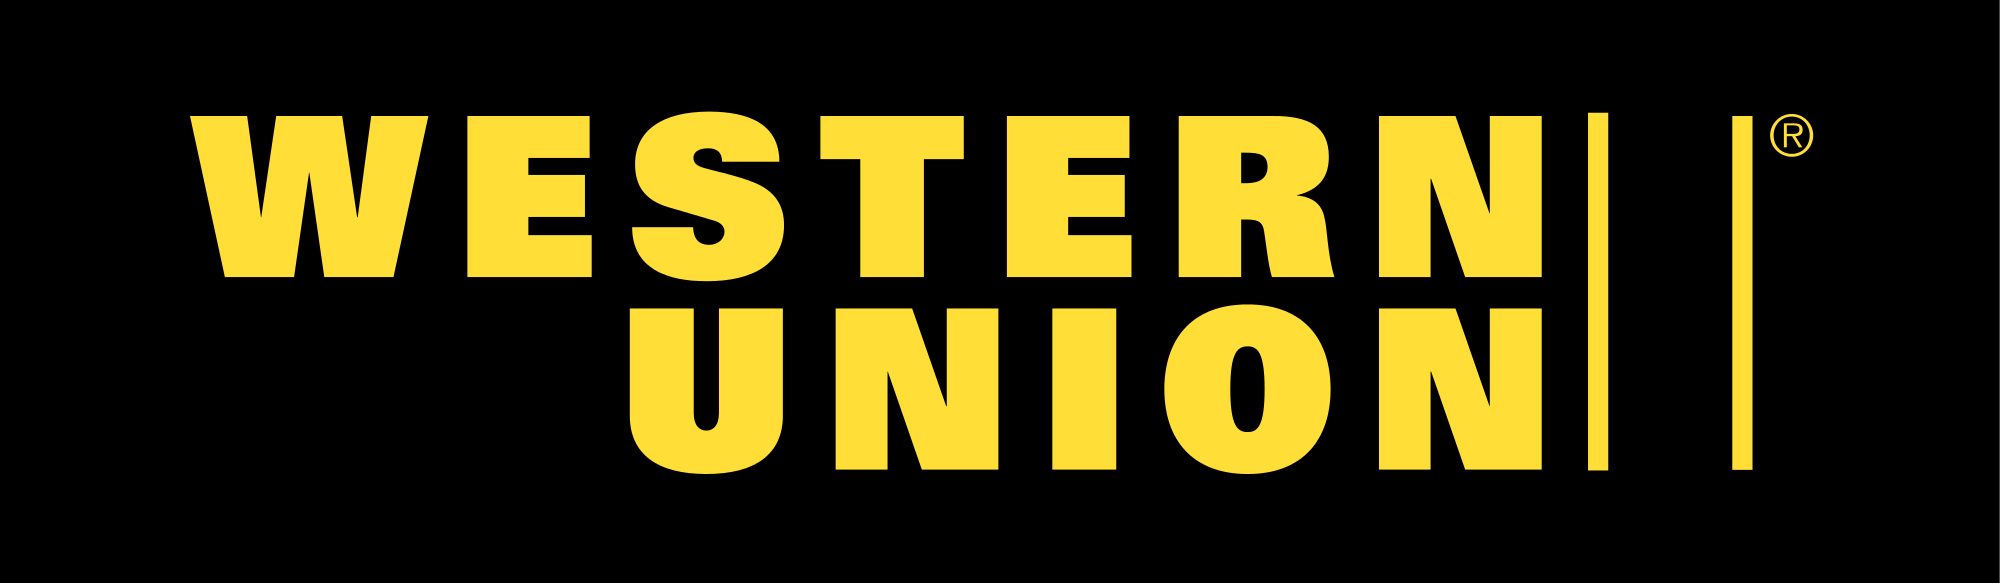 Western Union Viber Anlaşmas